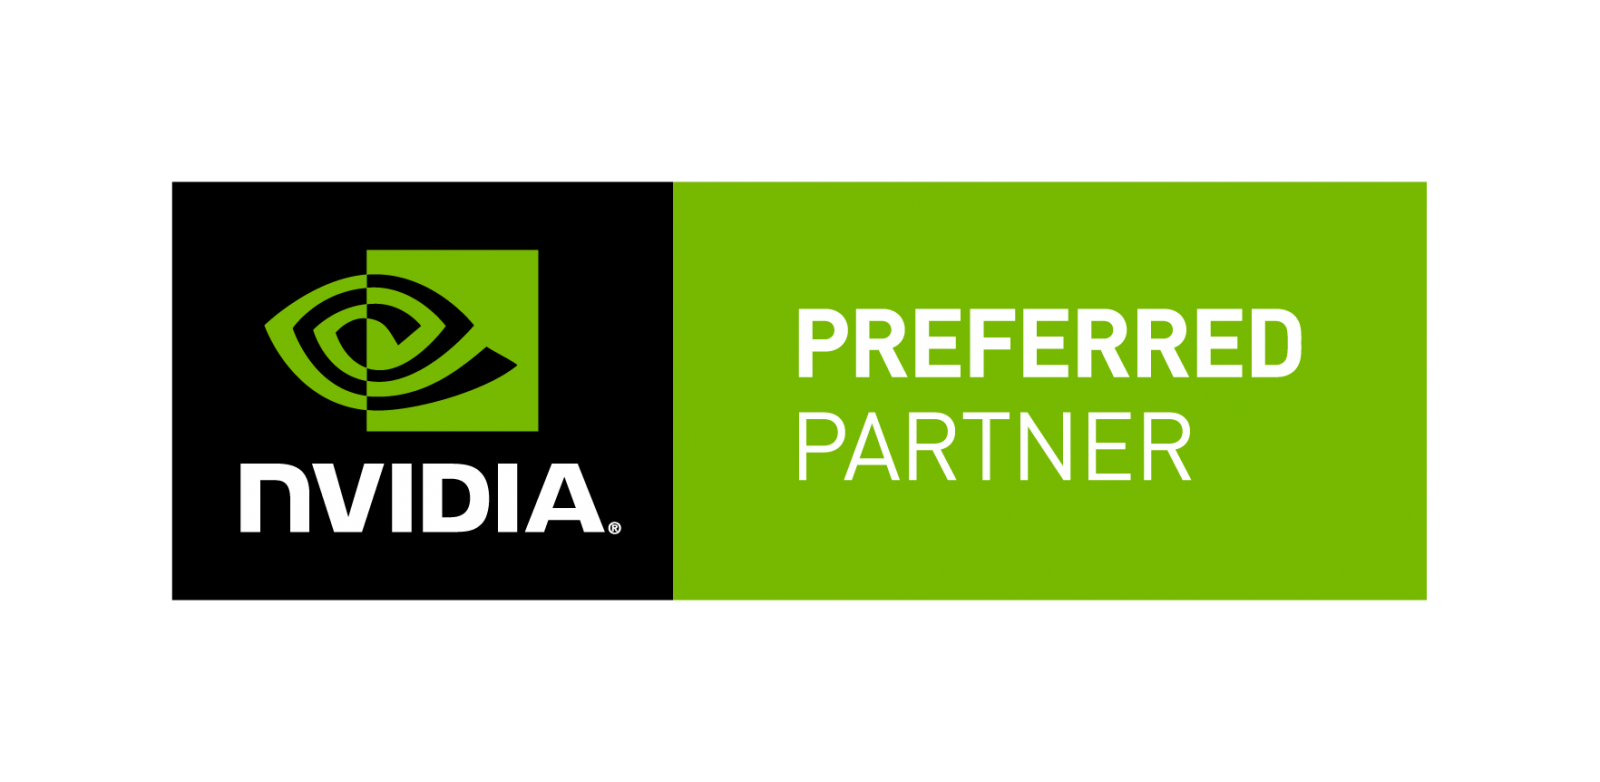 NVIDIA Preferred Partner